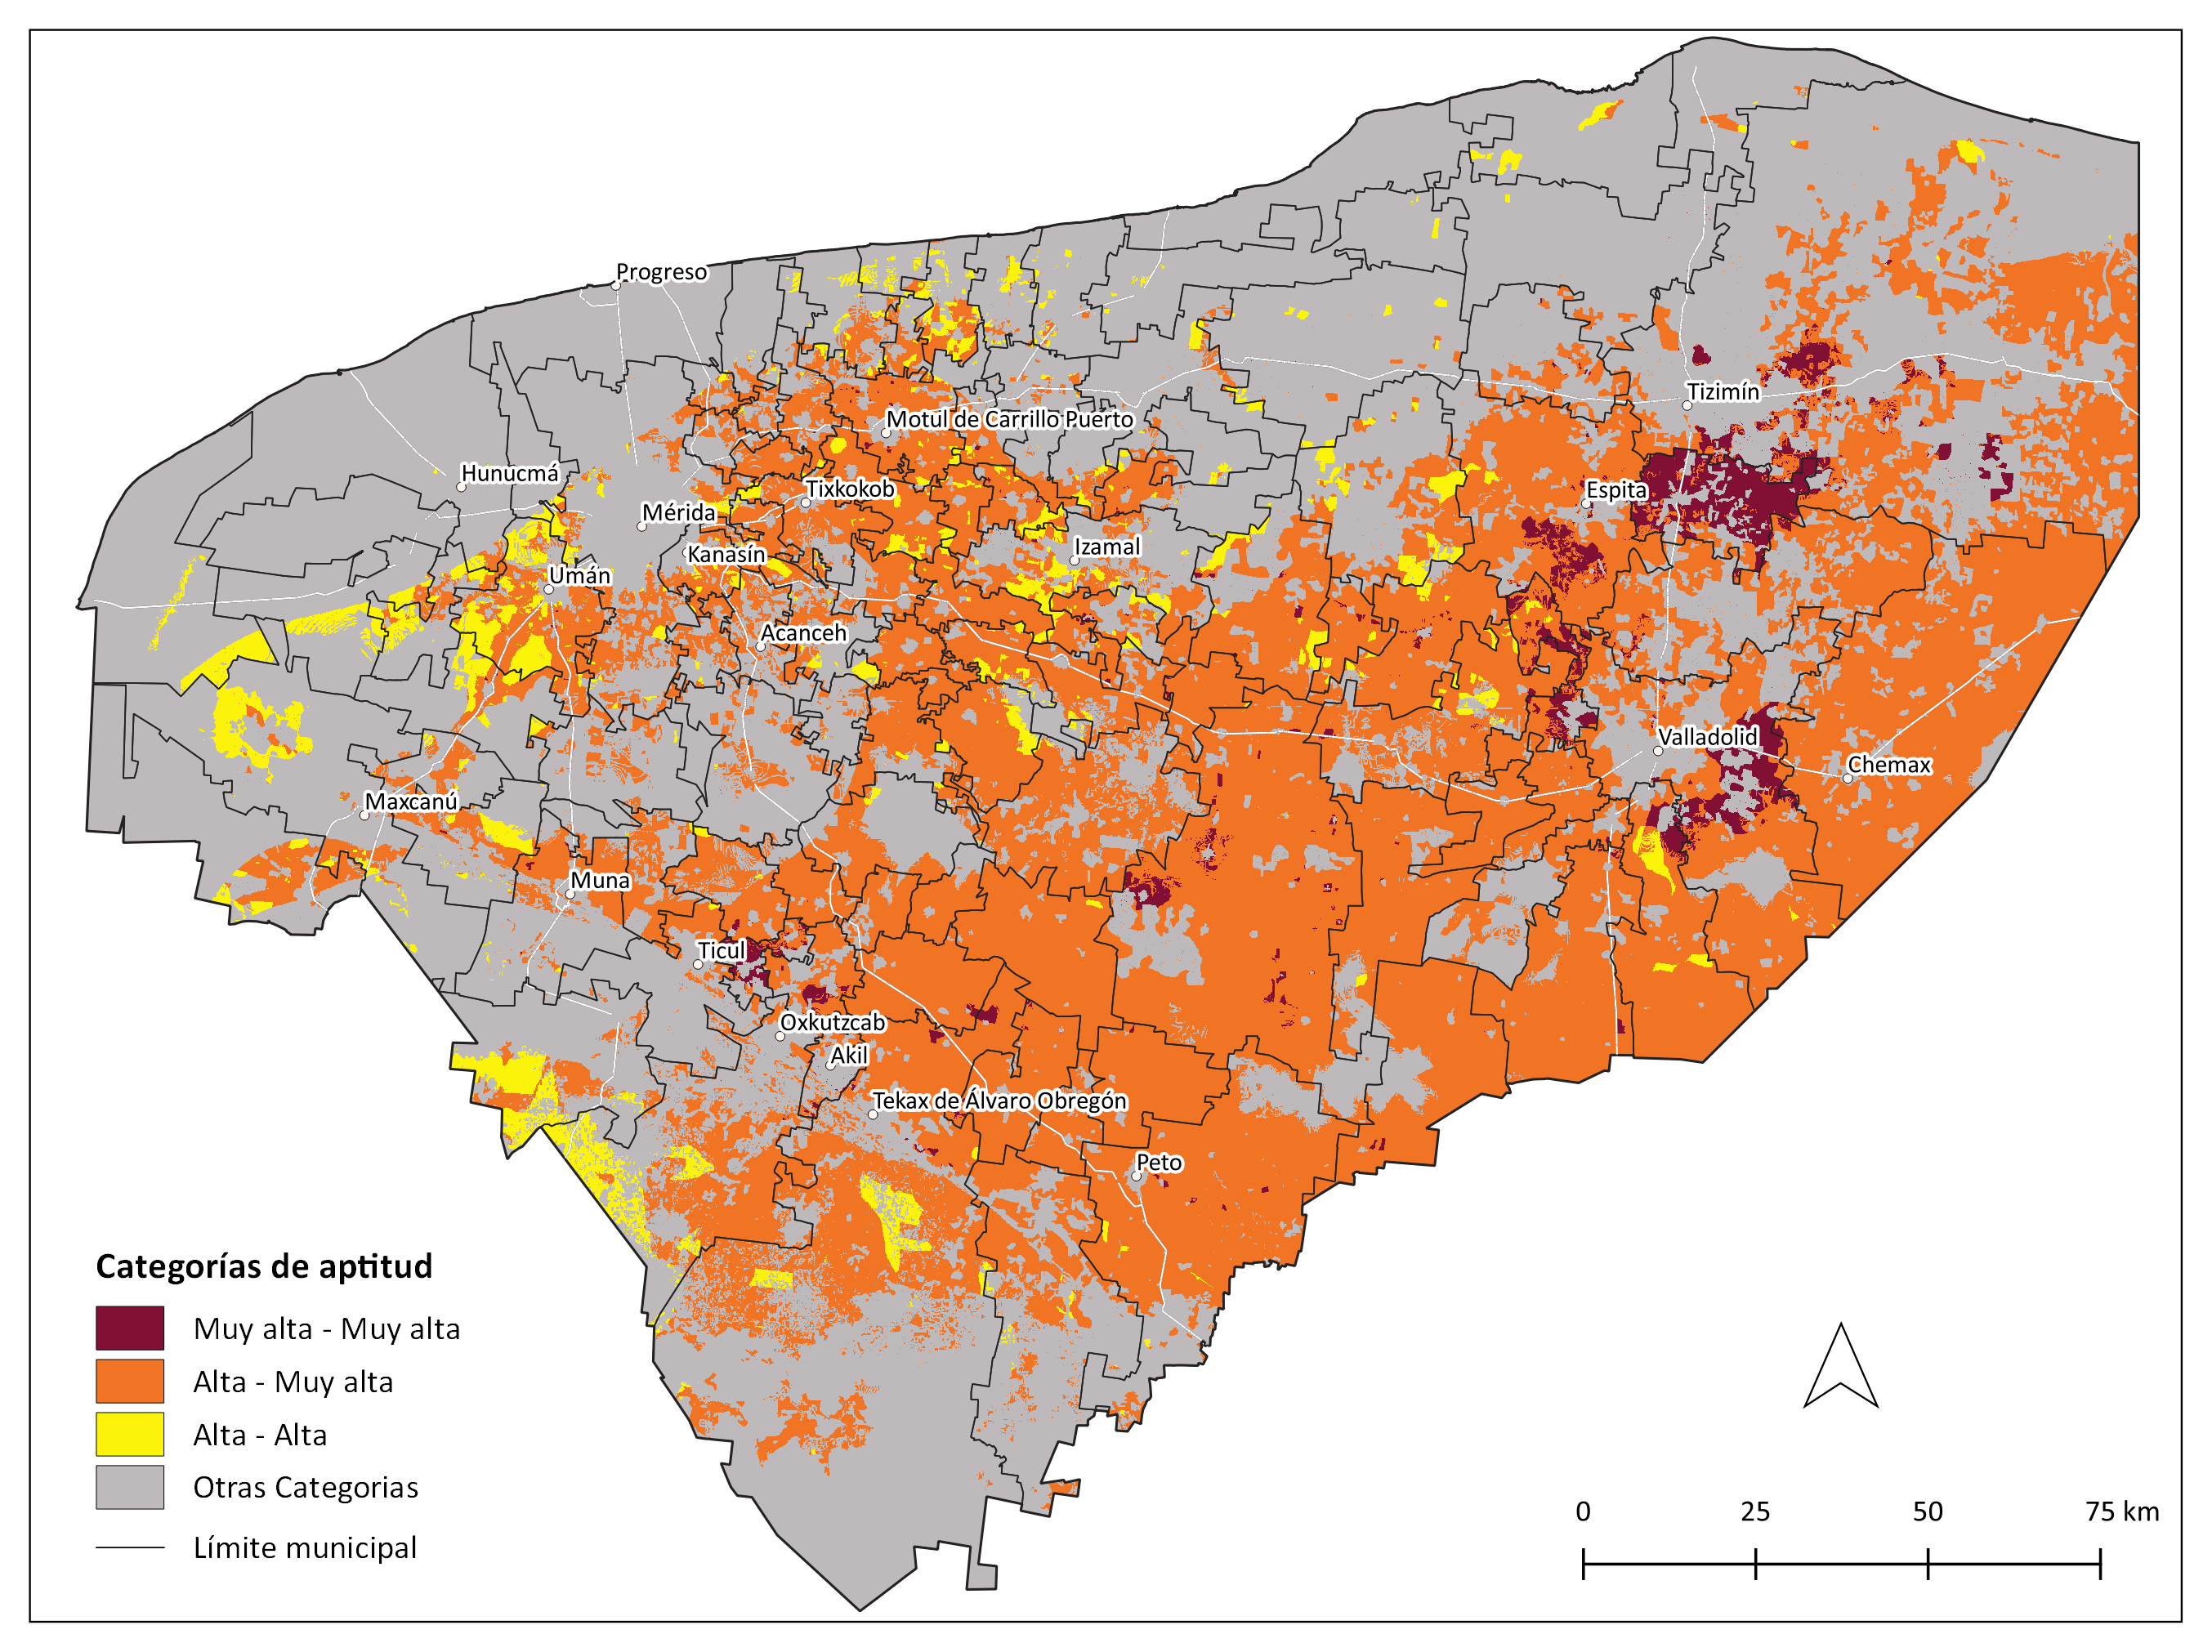 _images/mapa_agricultura_eq_cruza_apicultura_eq.png